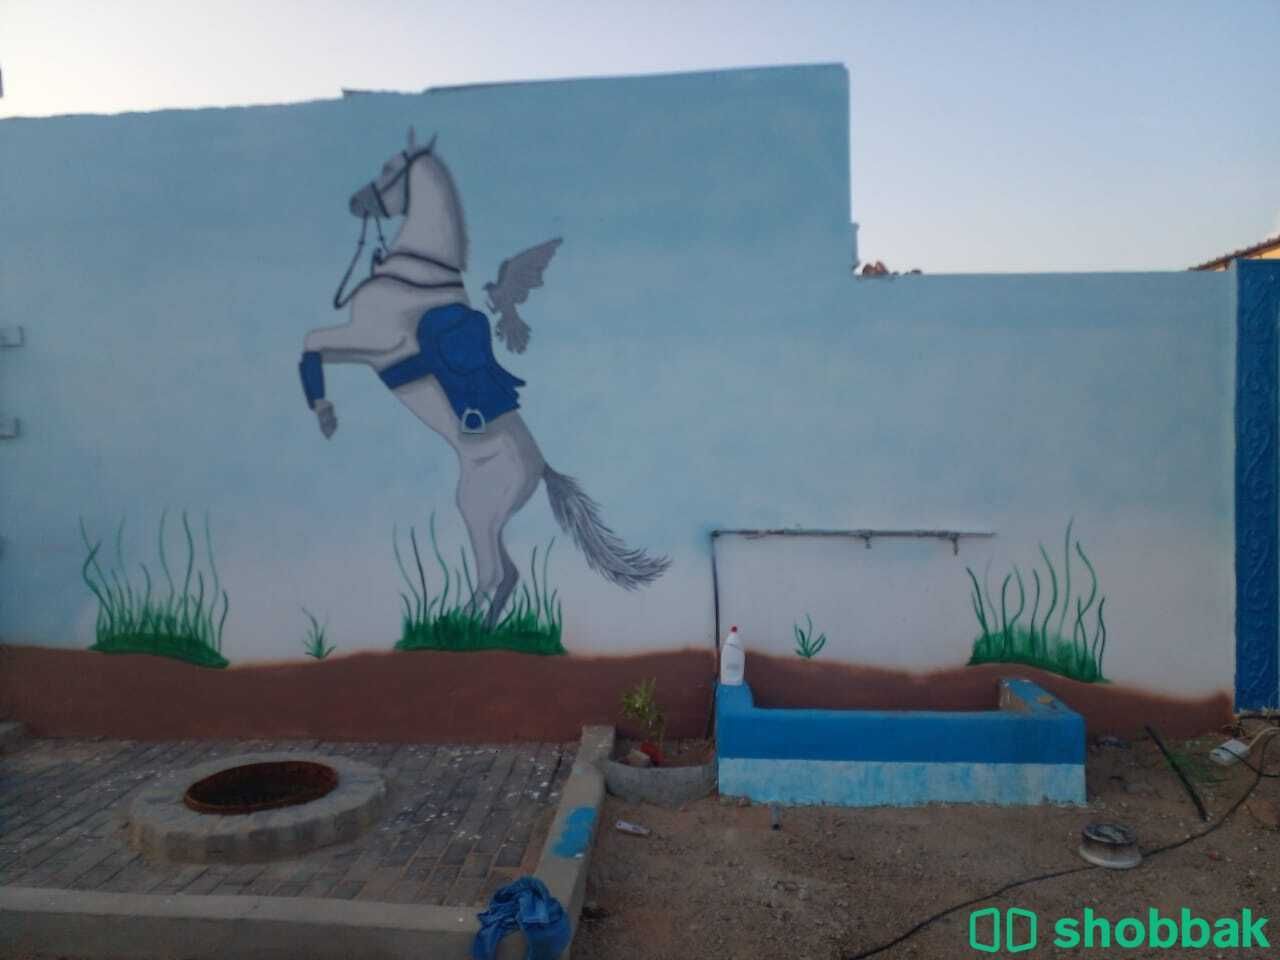 حول مساحتك إلى عمل فني مع رسام الجداريات المحترف! شباك السعودية